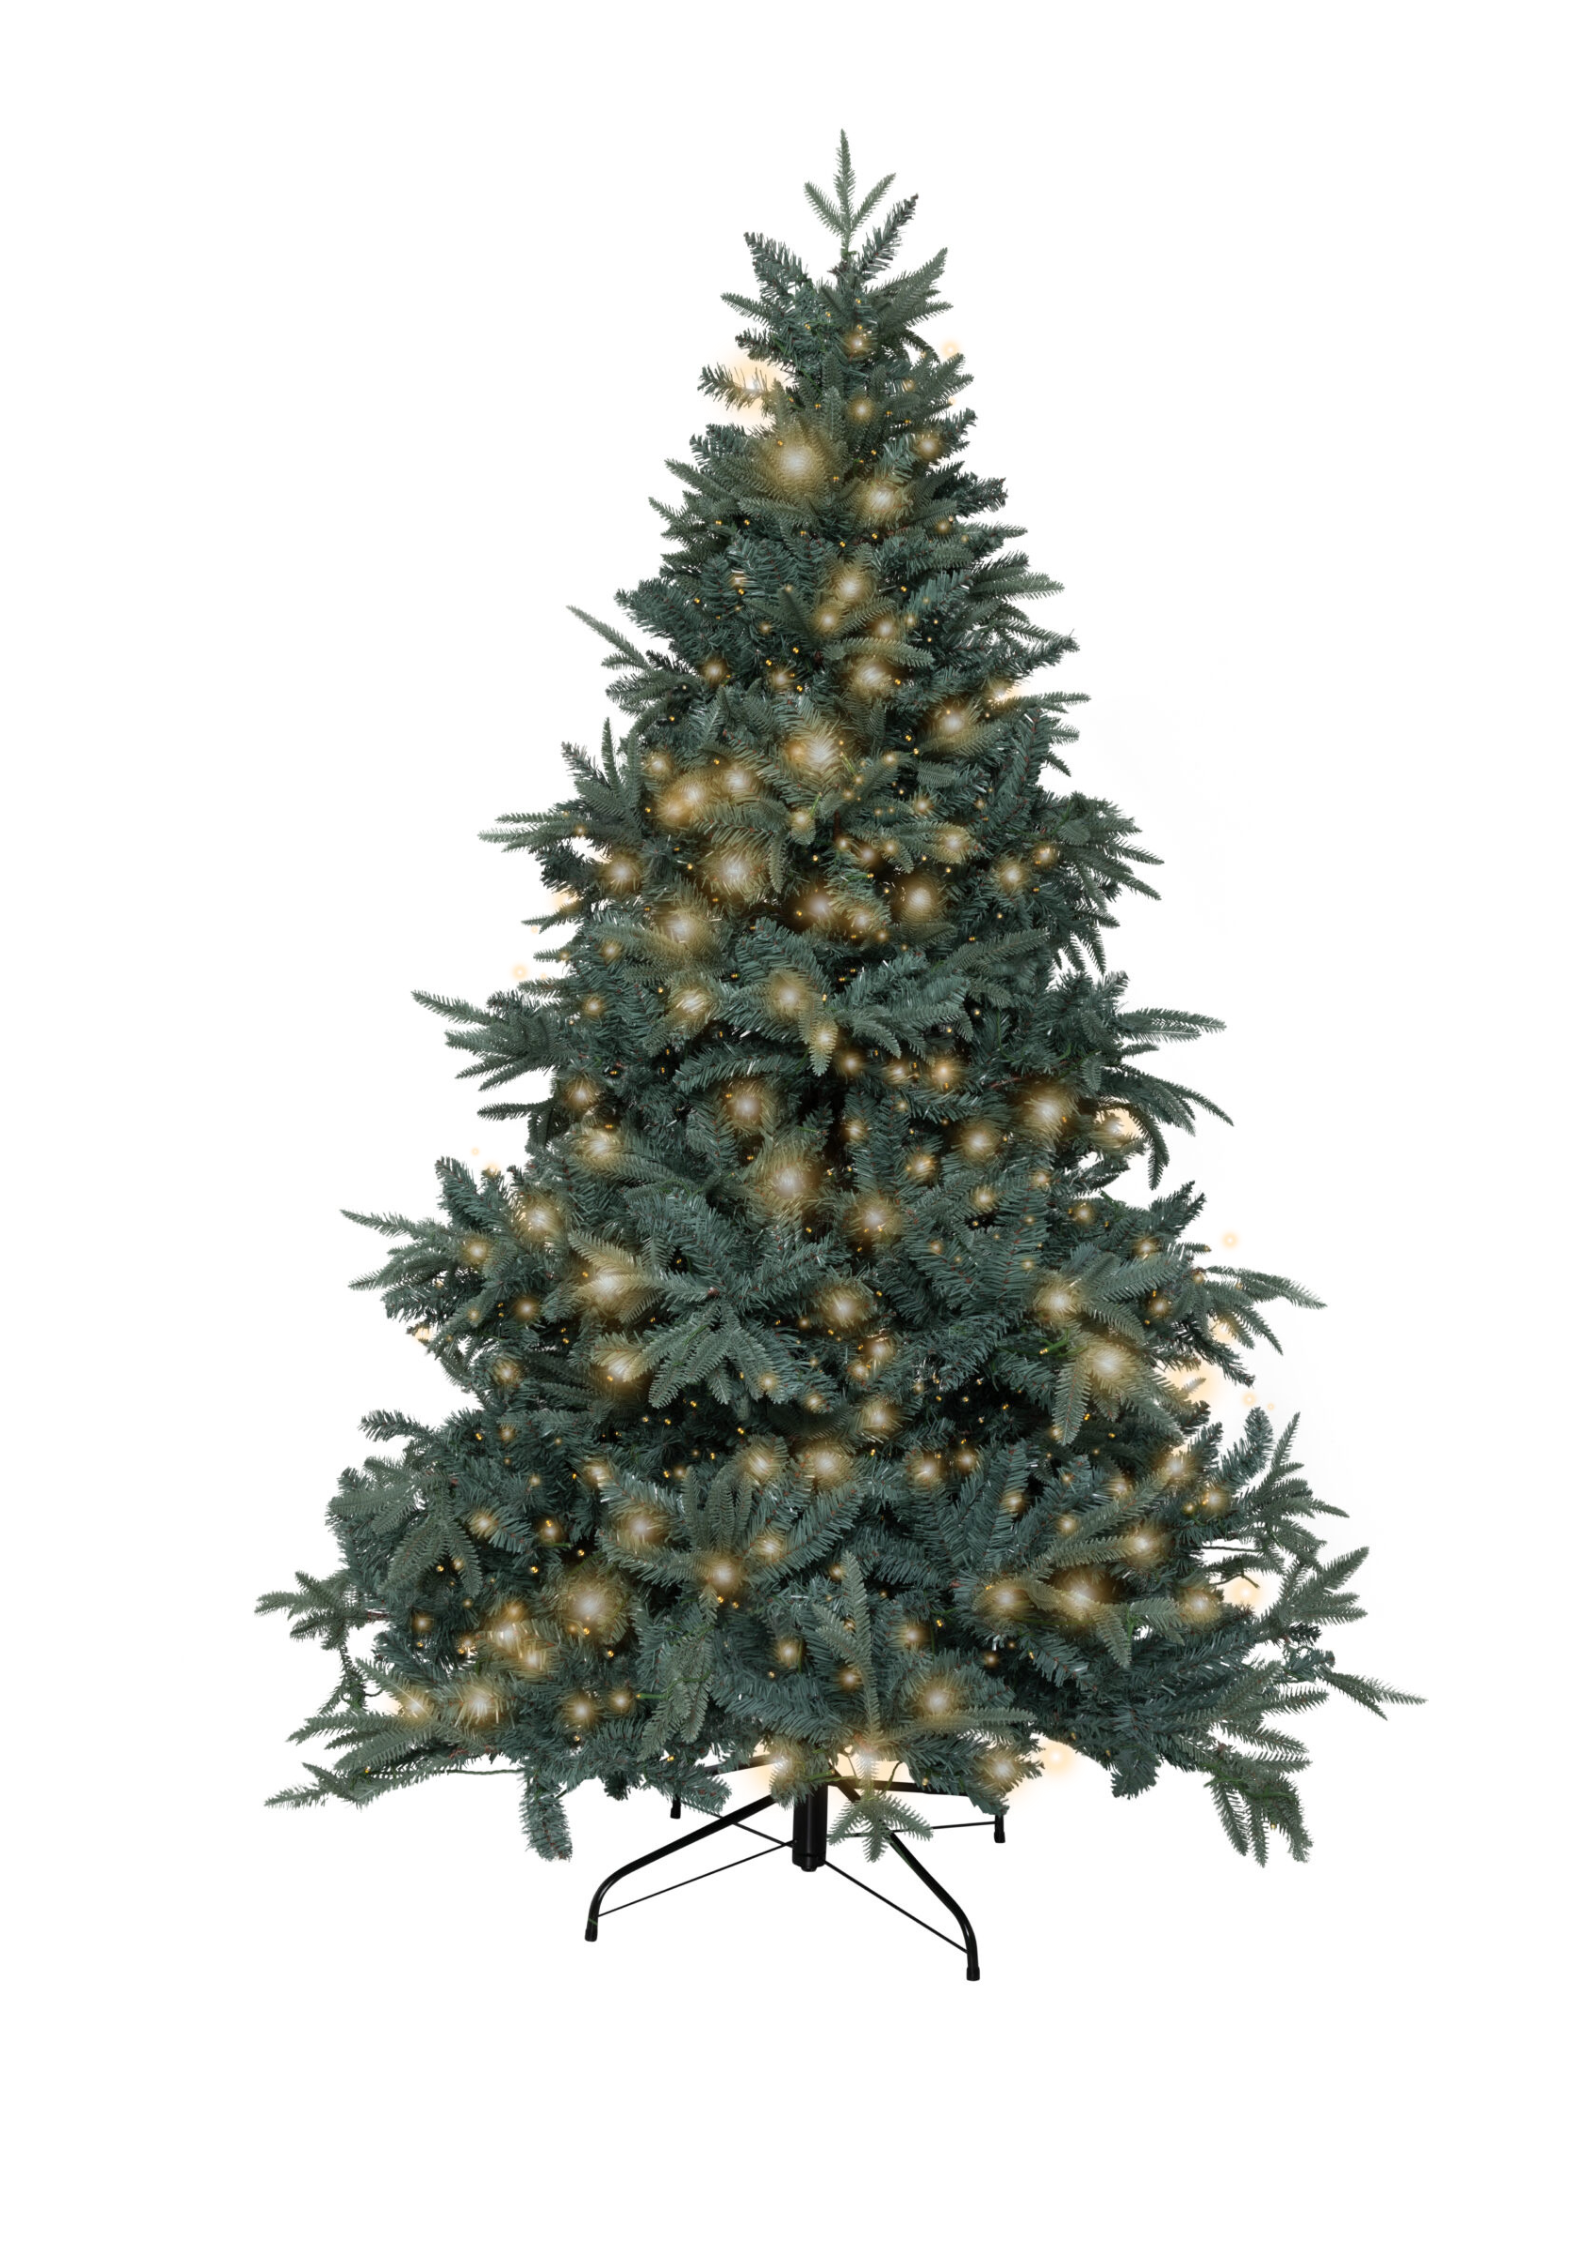 Tisdale blauwspar kerstboom met verlichting - Kunstkerstbomen